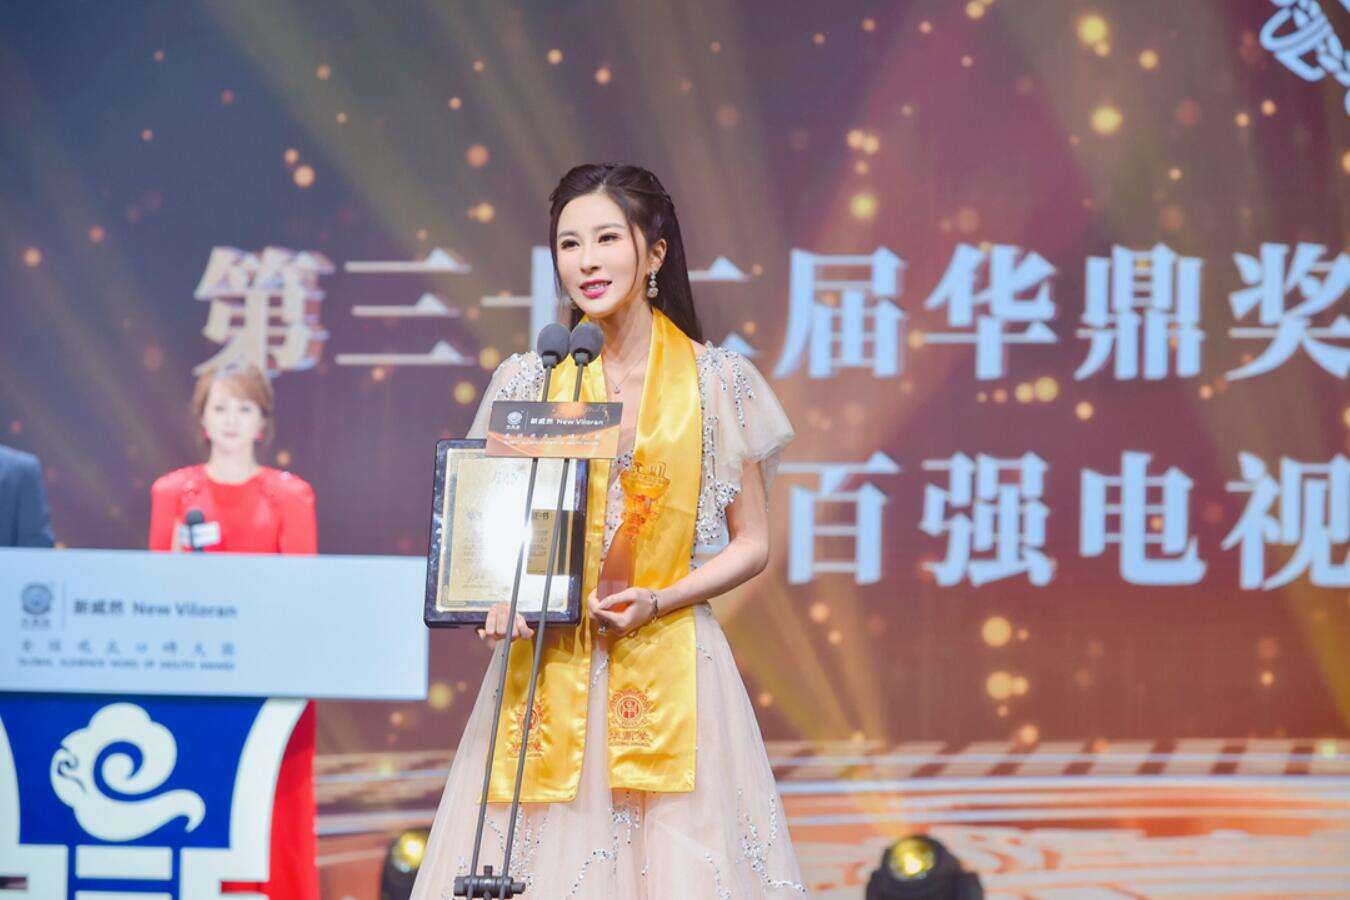 伊丽媛获华鼎奖中国百强电视剧最佳新锐演员，表示“要脚踏实地用心诠释好每一个角色”